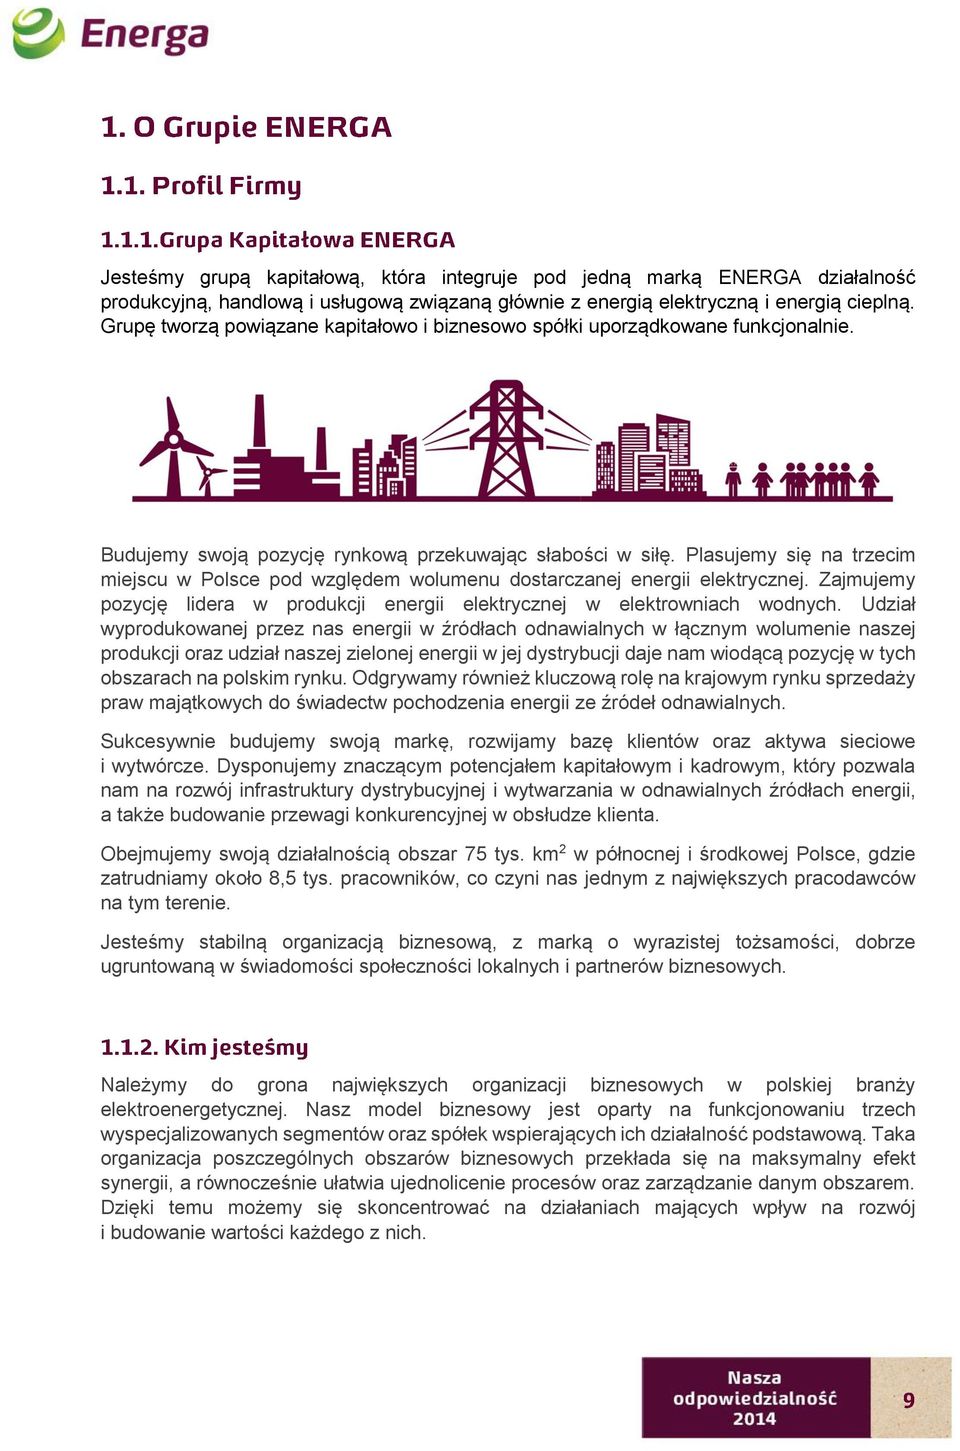 Plasujemy się na trzecim miejscu w Polsce pod względem wolumenu dostarczanej energii elektrycznej. Zajmujemy pozycję lidera w produkcji energii elektrycznej w elektrowniach wodnych.